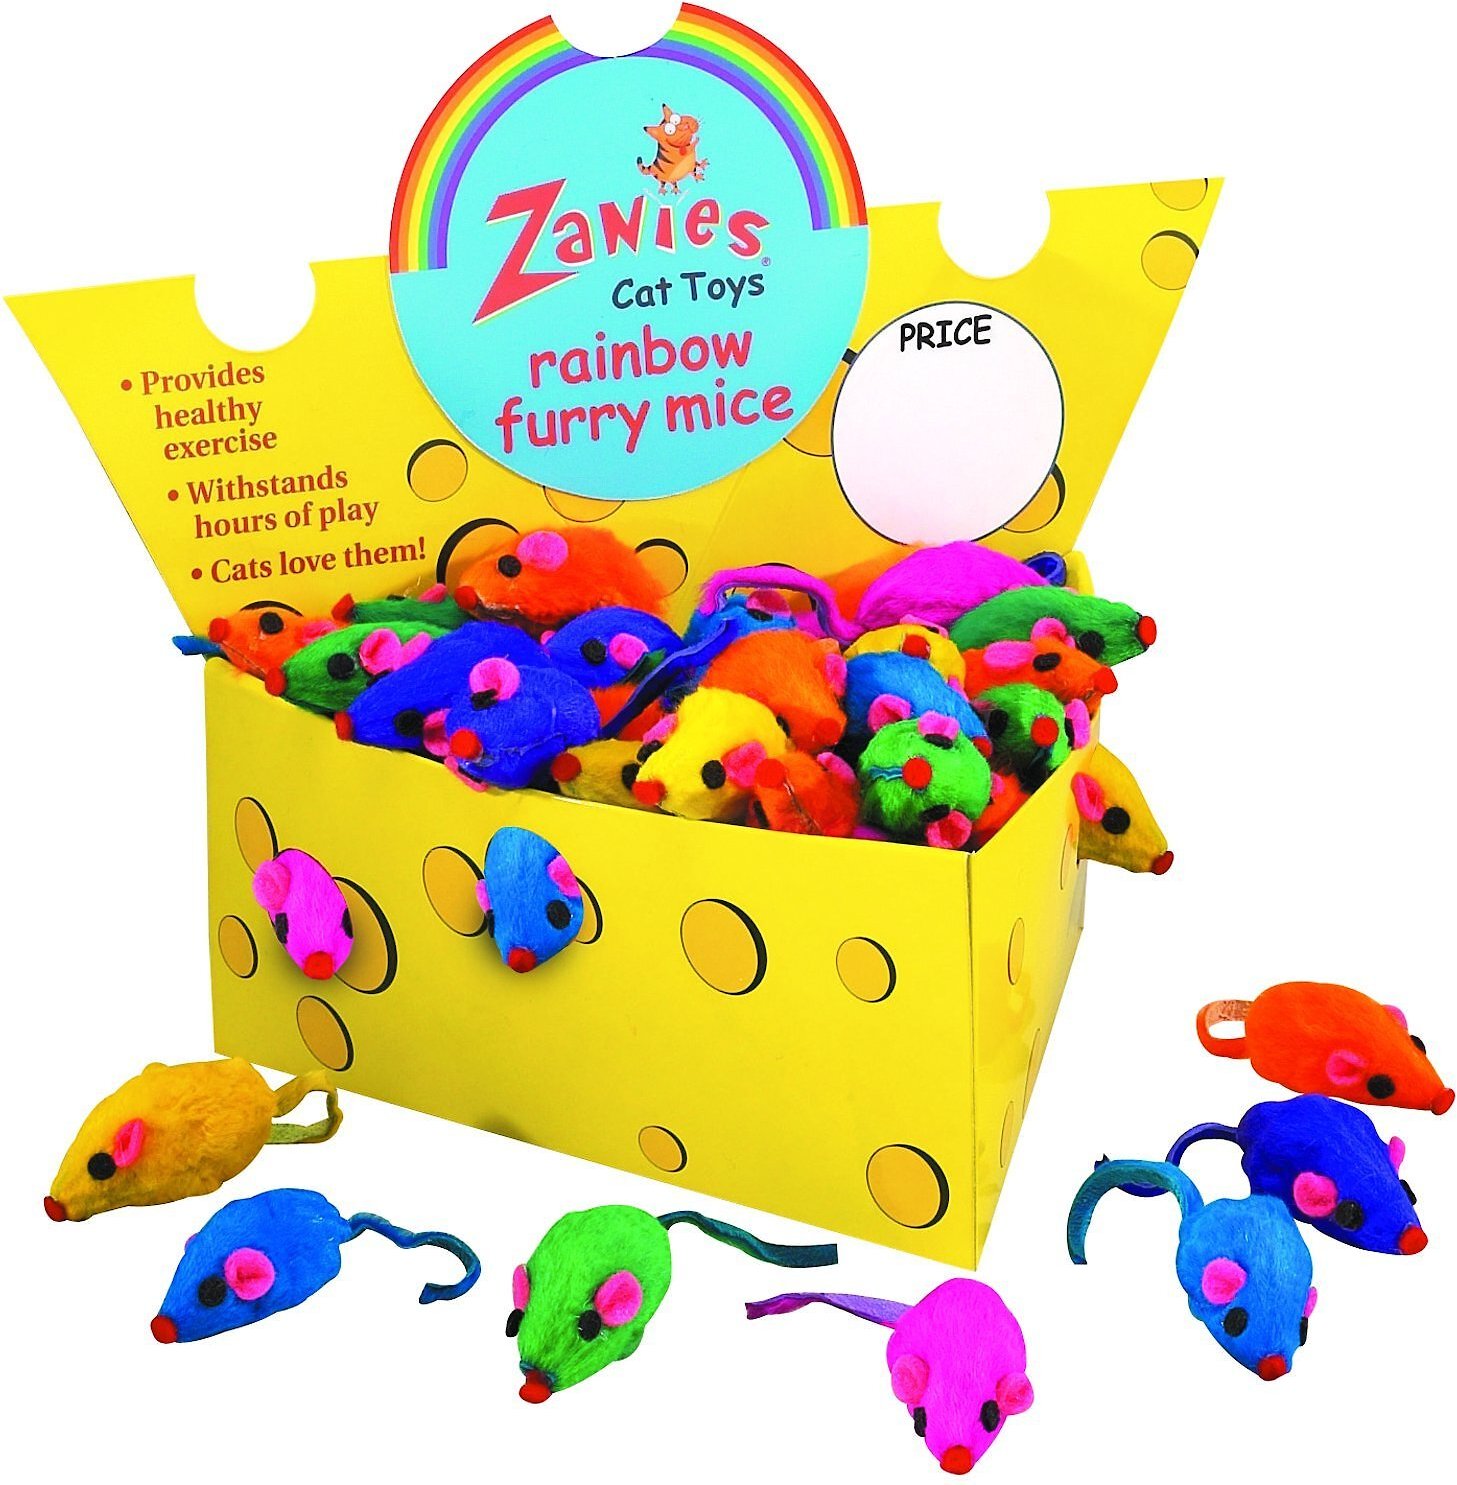 Zanies Cat Toys 72